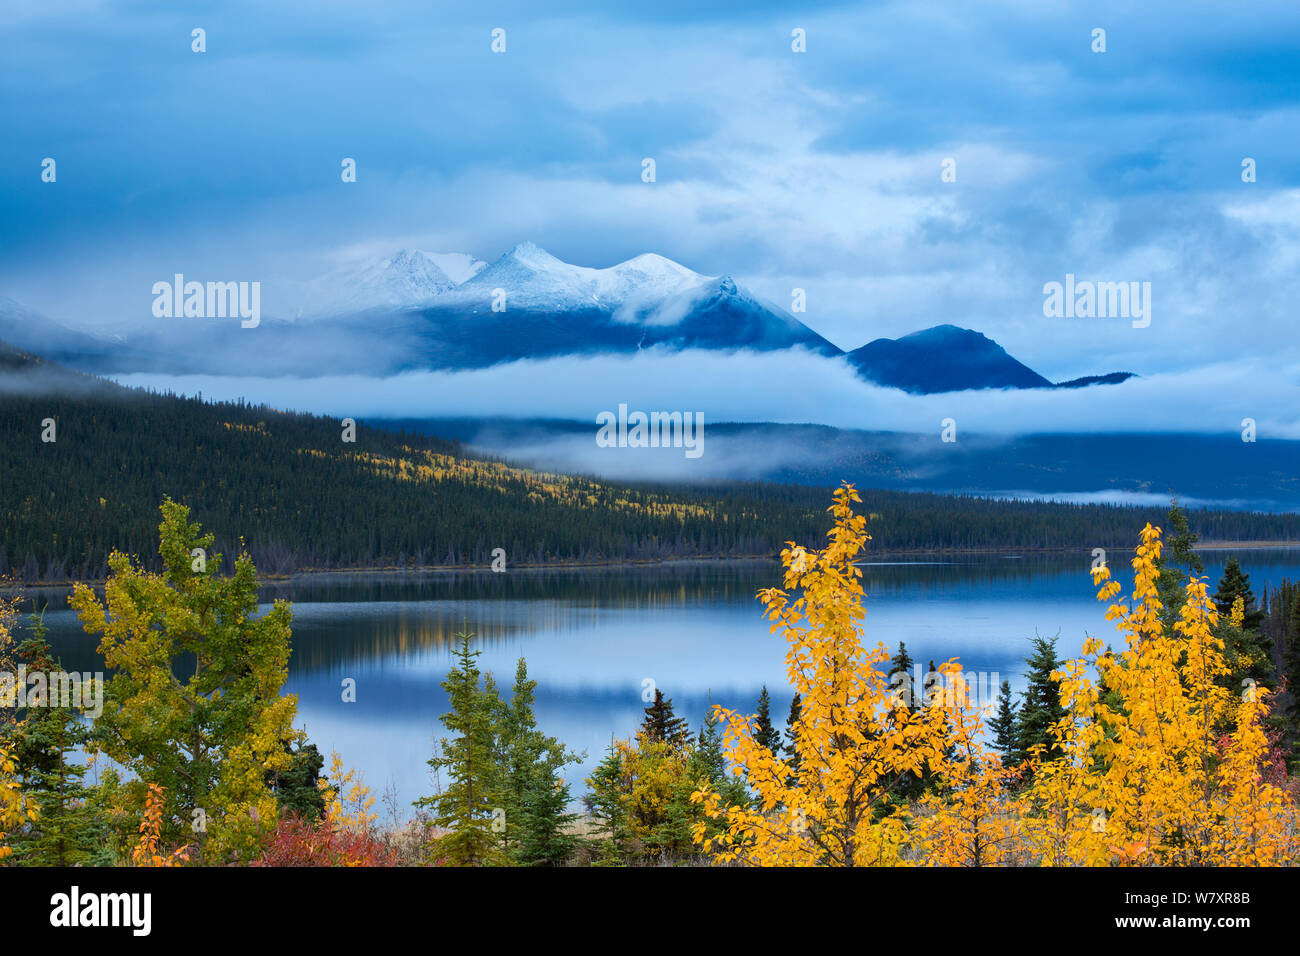 Arbre d'automne tremble (Populus tremuloides) à Nares Lake, avec au-delà de Montana Mountain, près de Carcross, au Yukon, Canada, septembre 2013. Banque D'Images